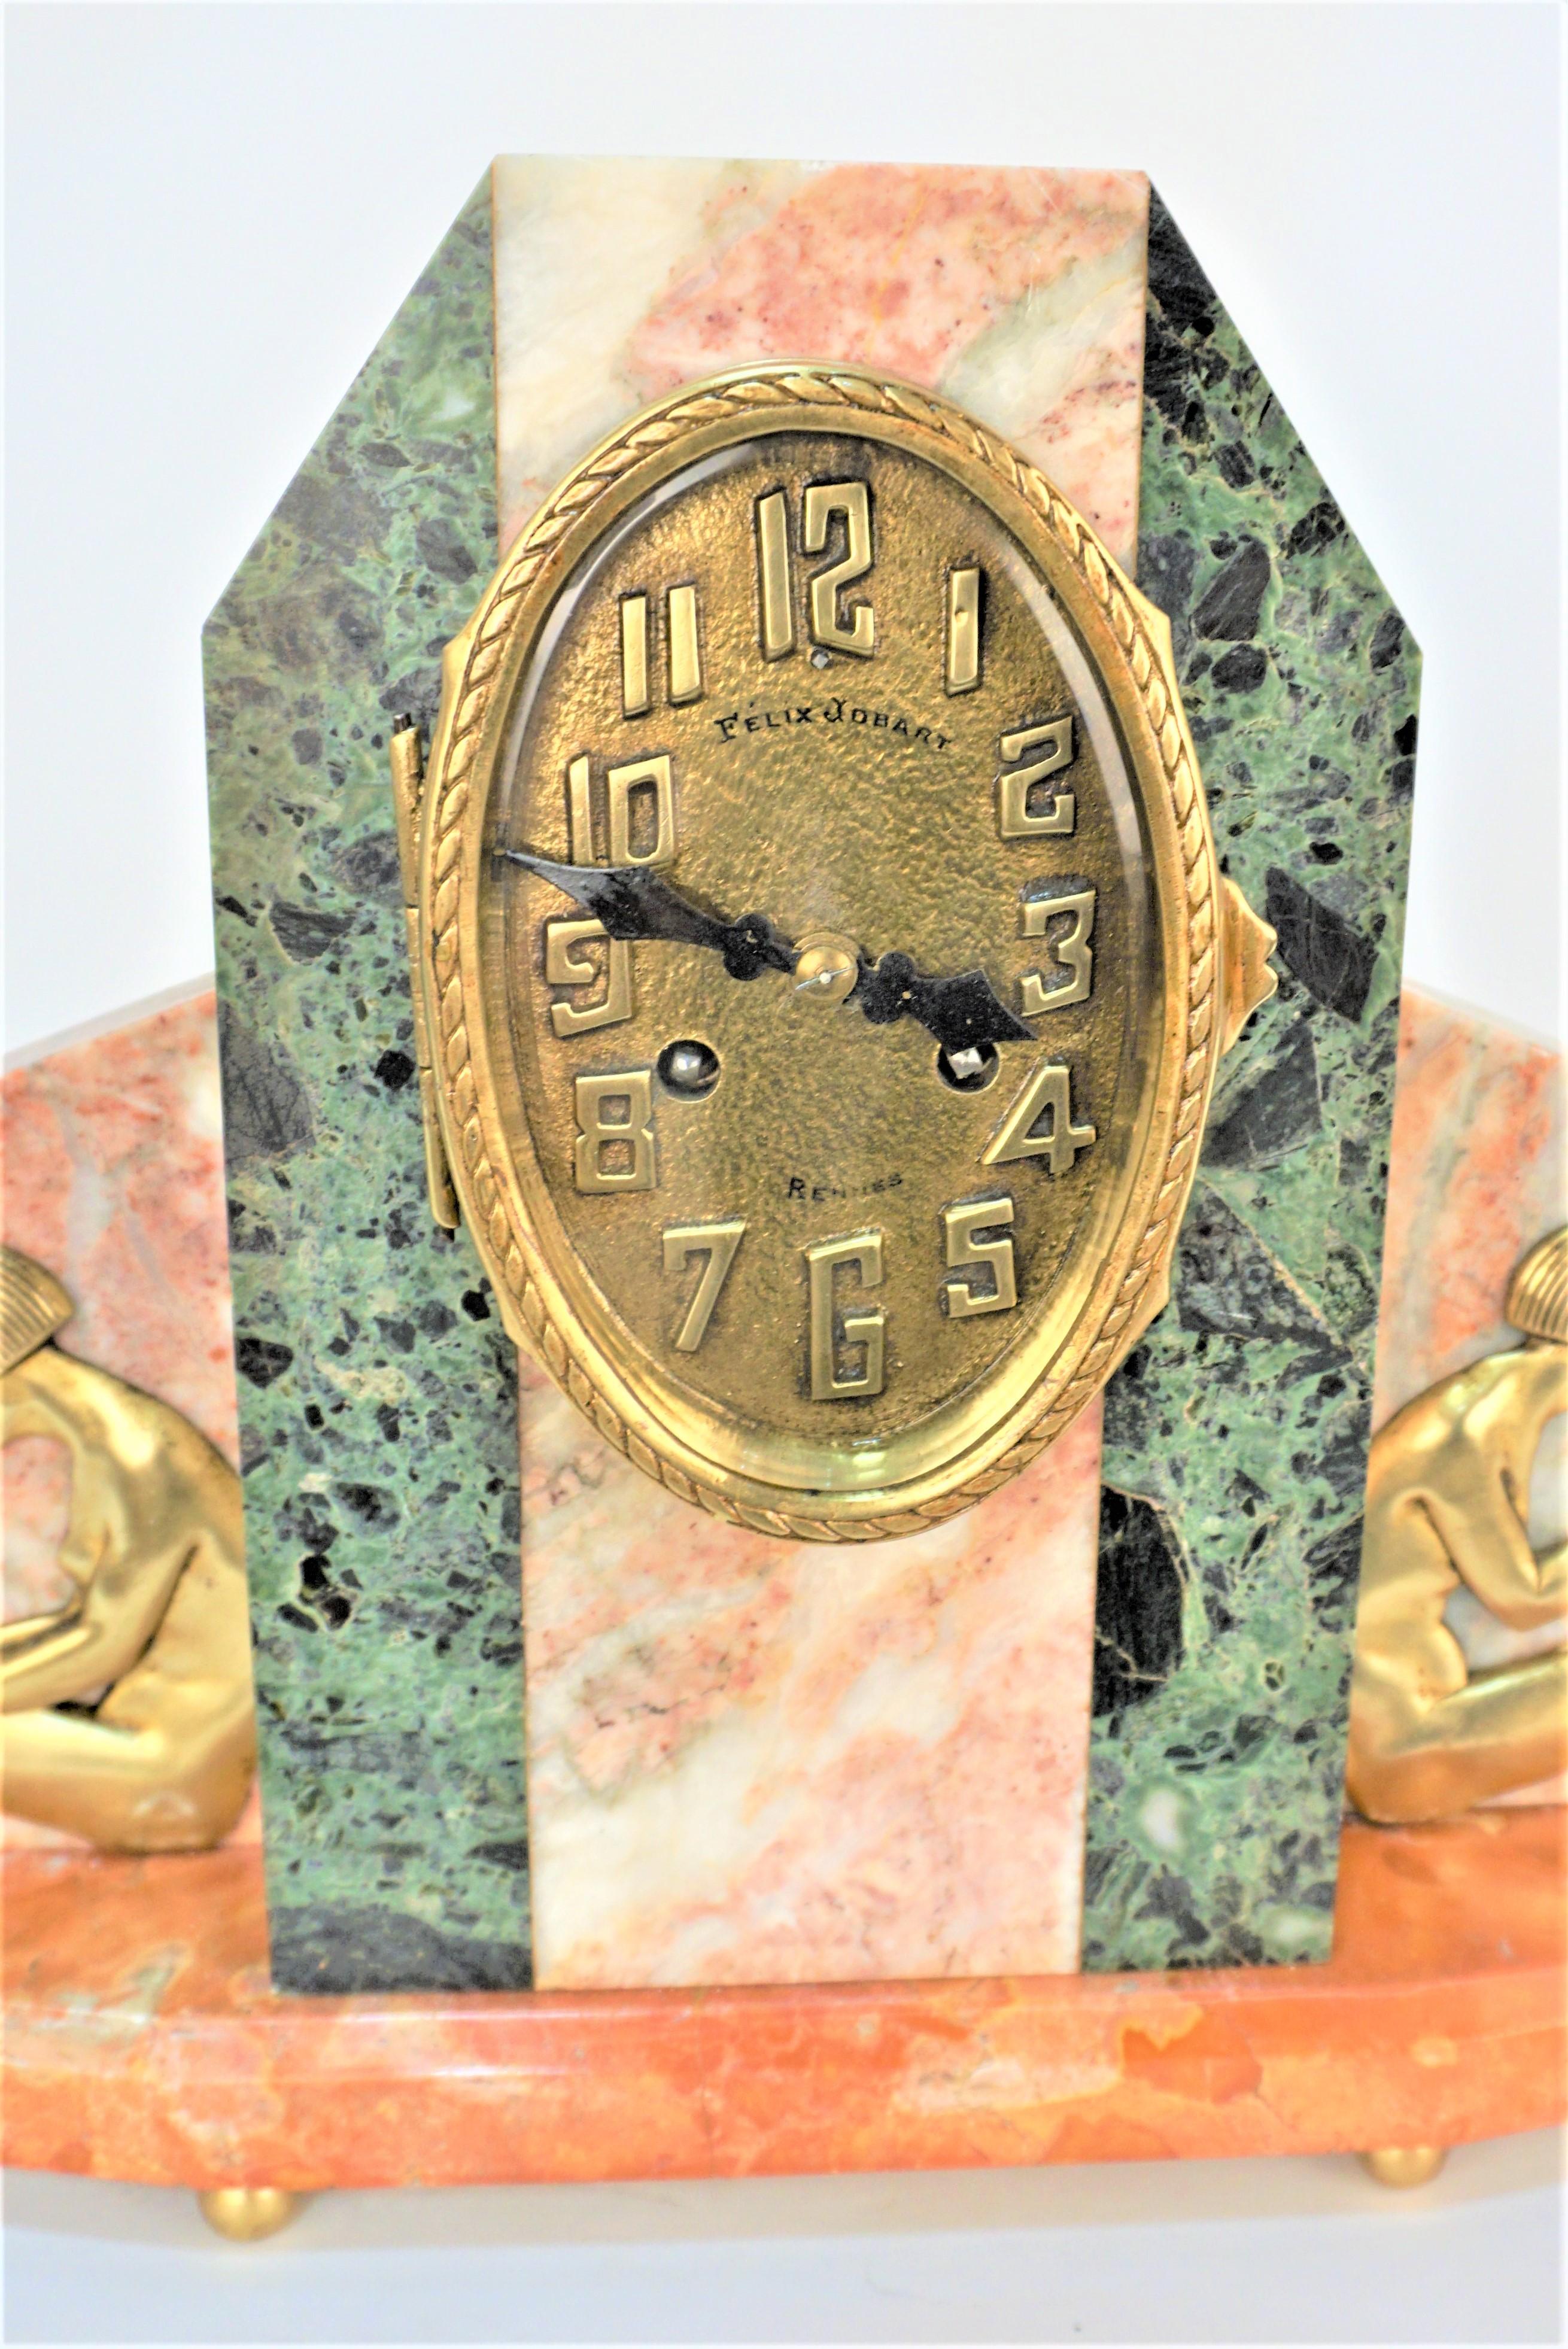 Sehr elegante Art Deco Drei Farbe Marmor und Bronze Uhr circa 1920's
in schönem, funktionierendem Zustand.
Diese Uhr ist professionell gereinigt und gewartet worden.